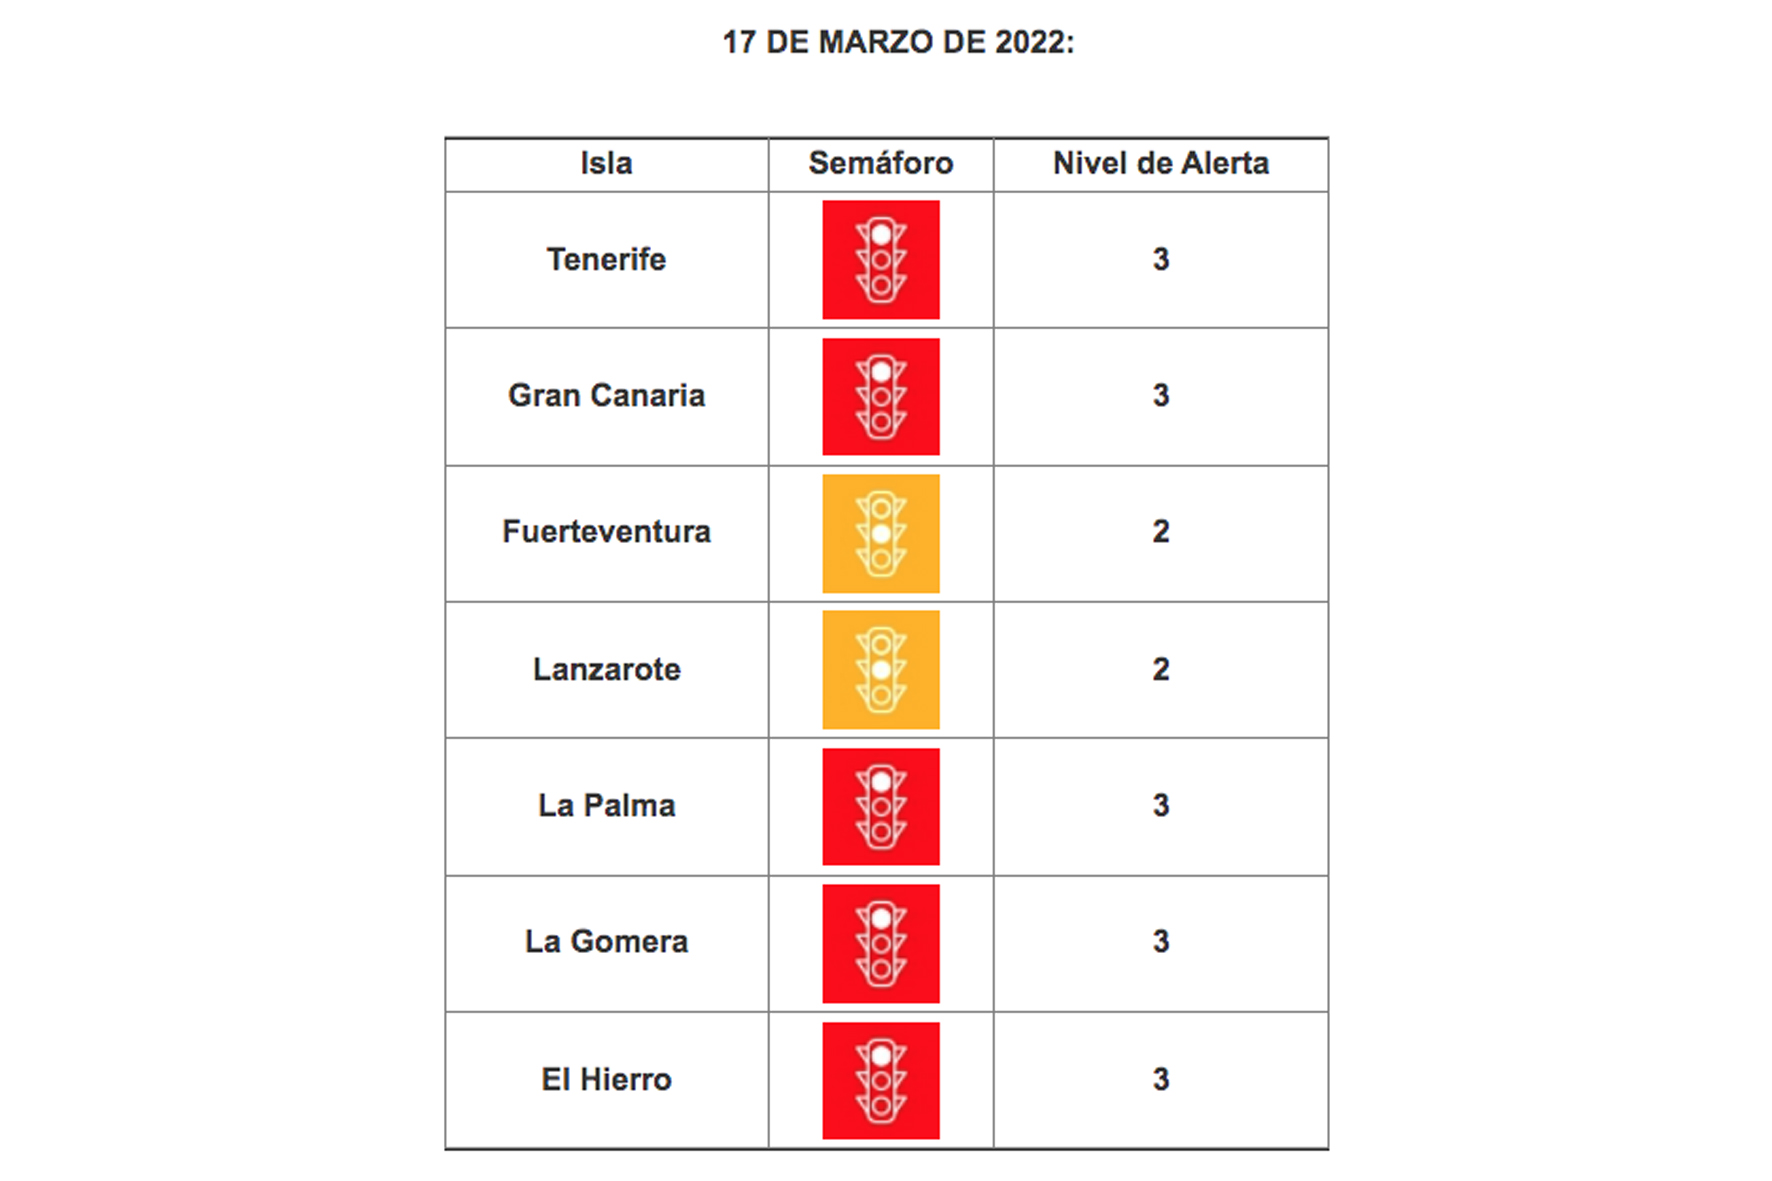 El Hierro, La Gomera, La Palma y Gran Canaria se mantienen en nivel 3, mientras que Fuerteventura y Lanzarote continuarán en nivel 2